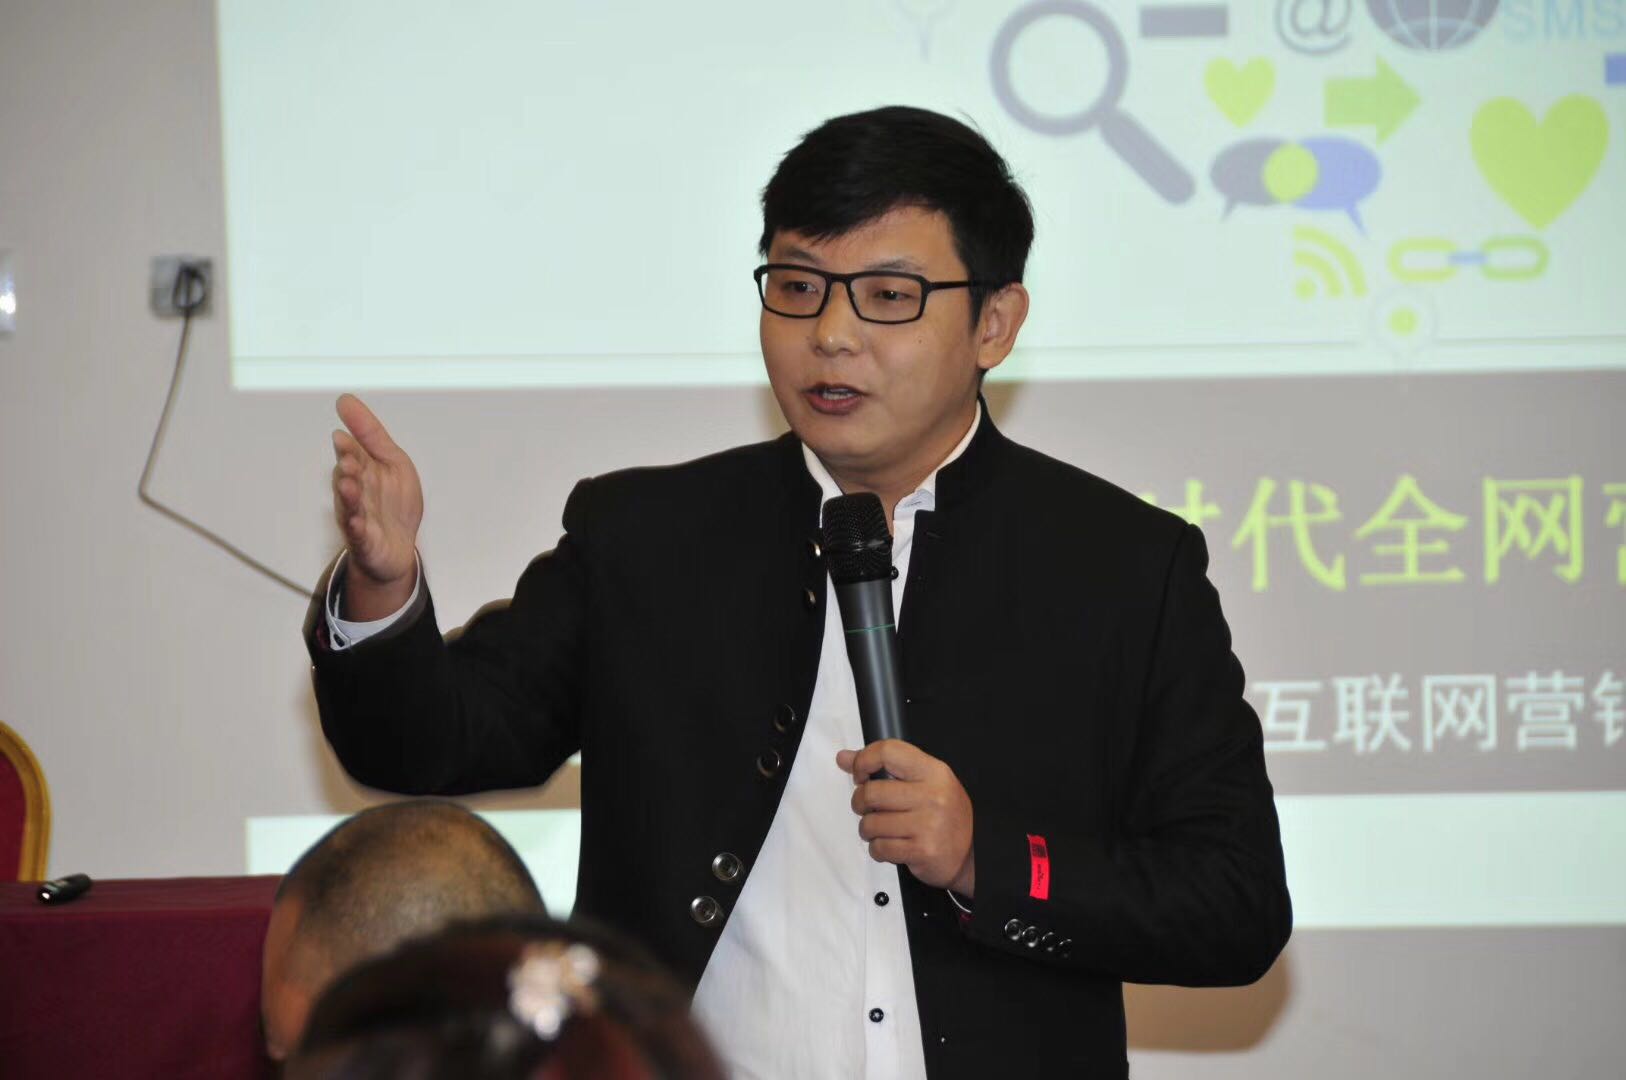 杨永春老师为山西晋城中小企业局讲《互联网 全网营销》